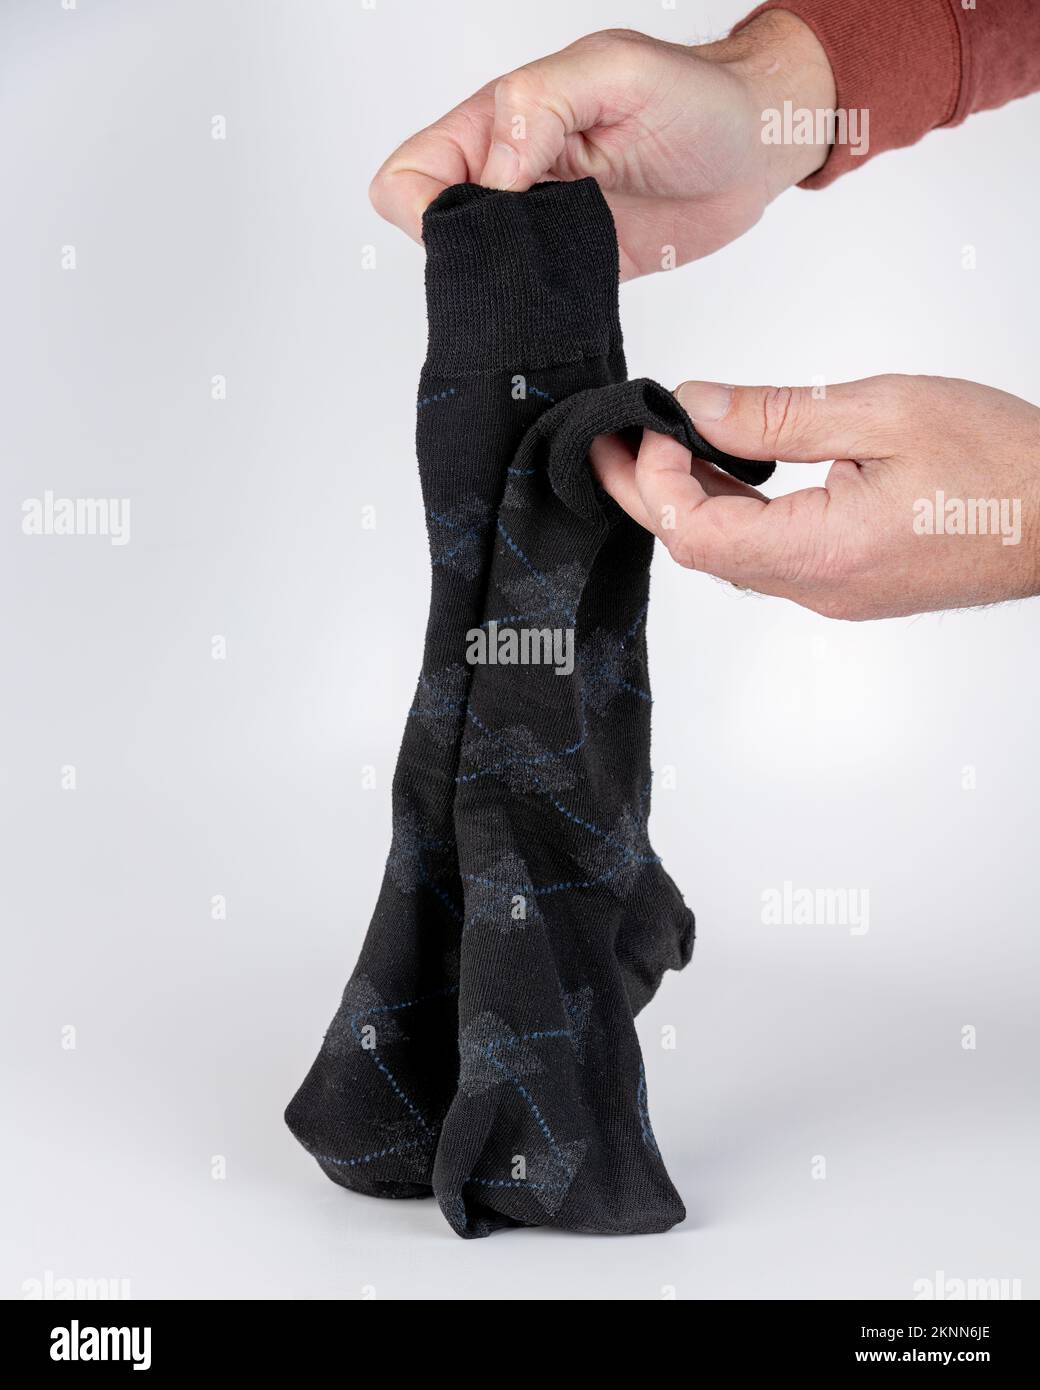 Schicke, dunkle Socken werden vor dem Aufbewahren zu einem zusammengefügt Stockfoto